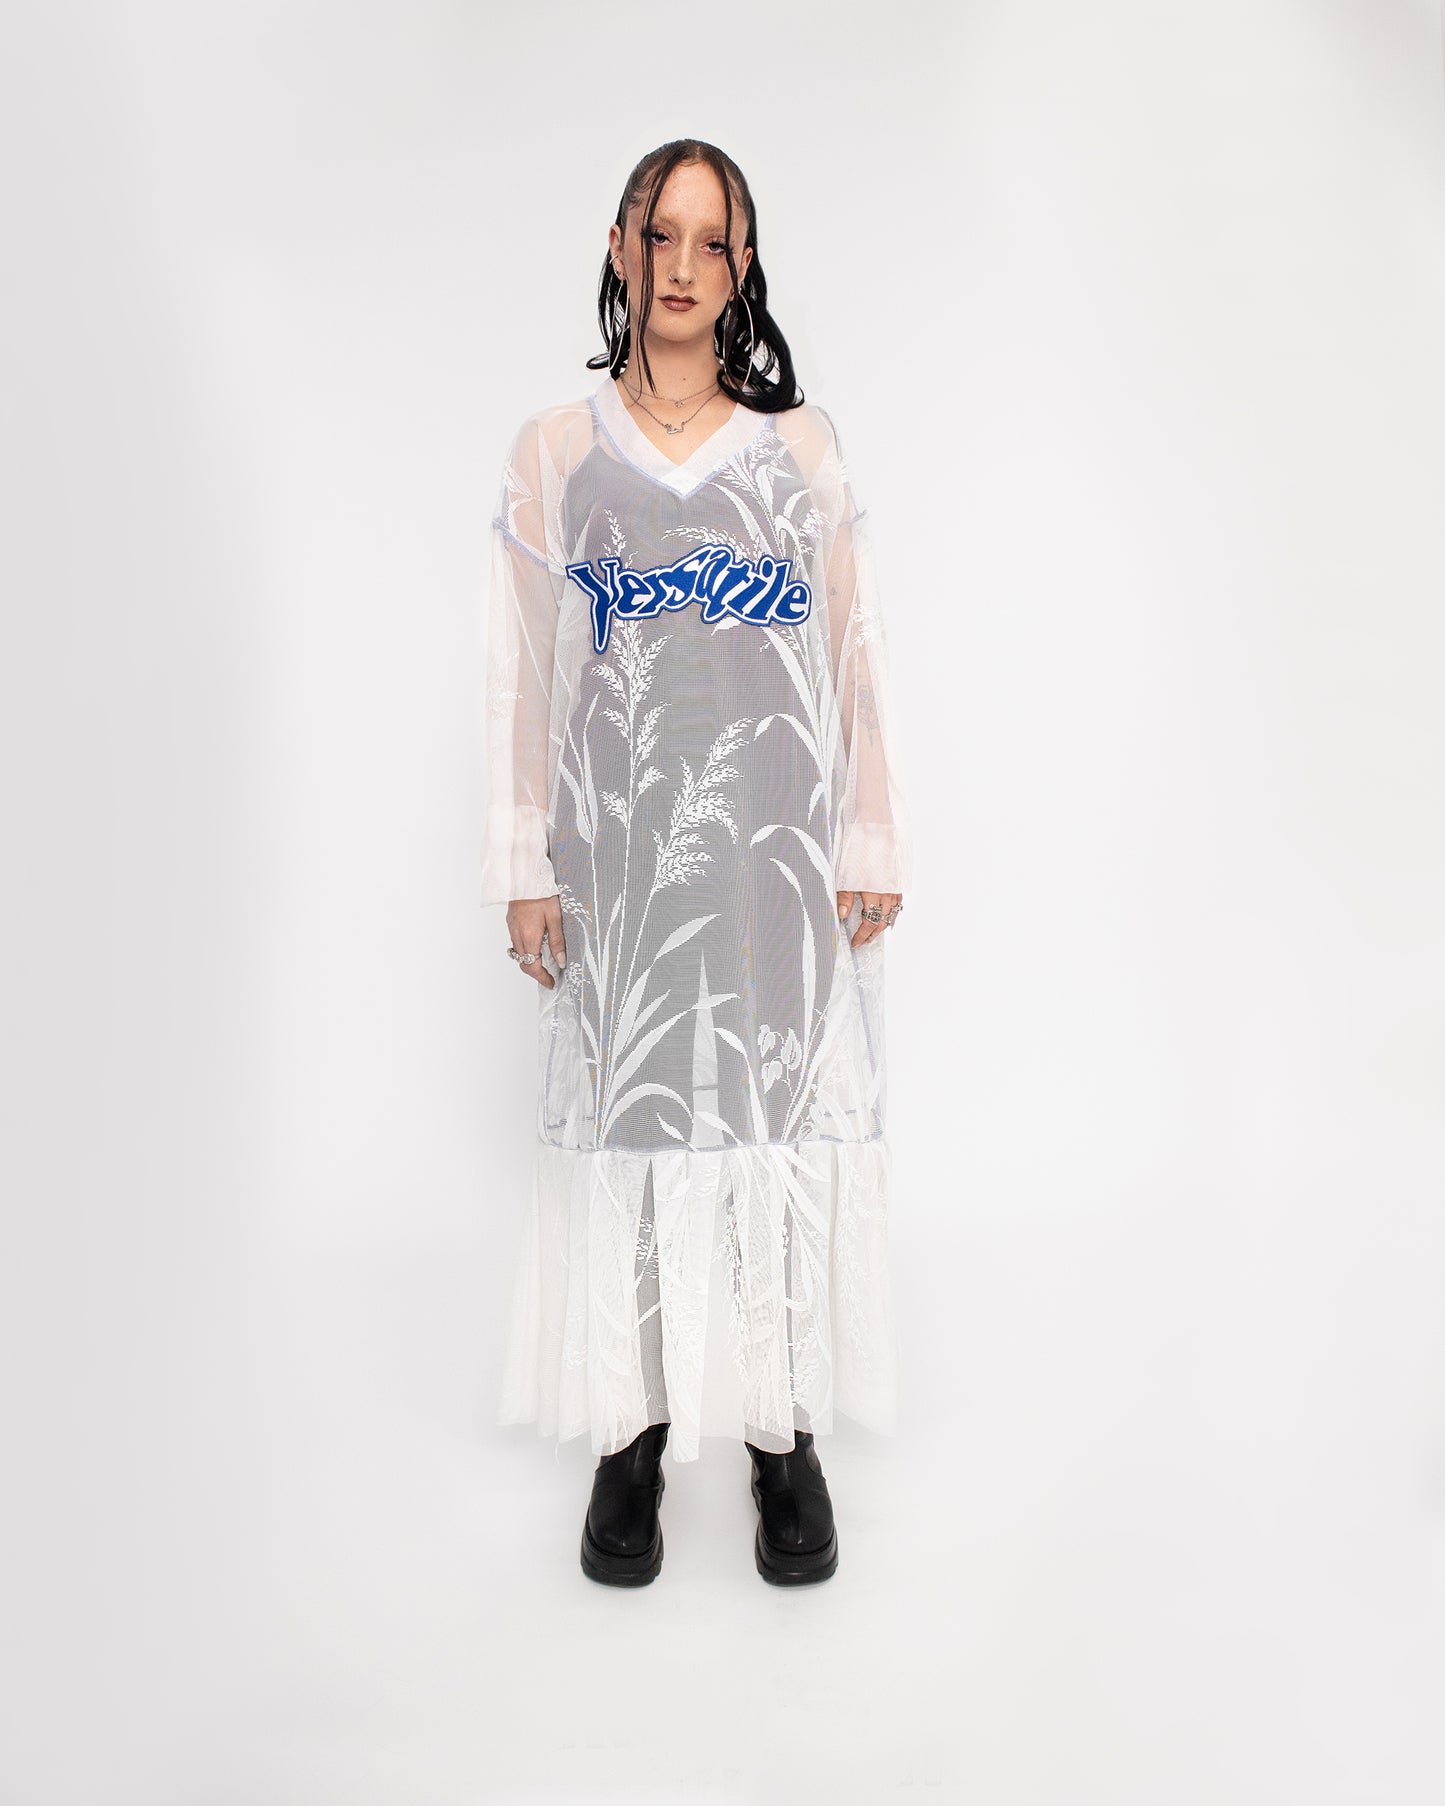 Lace Soccer Jersey Dress